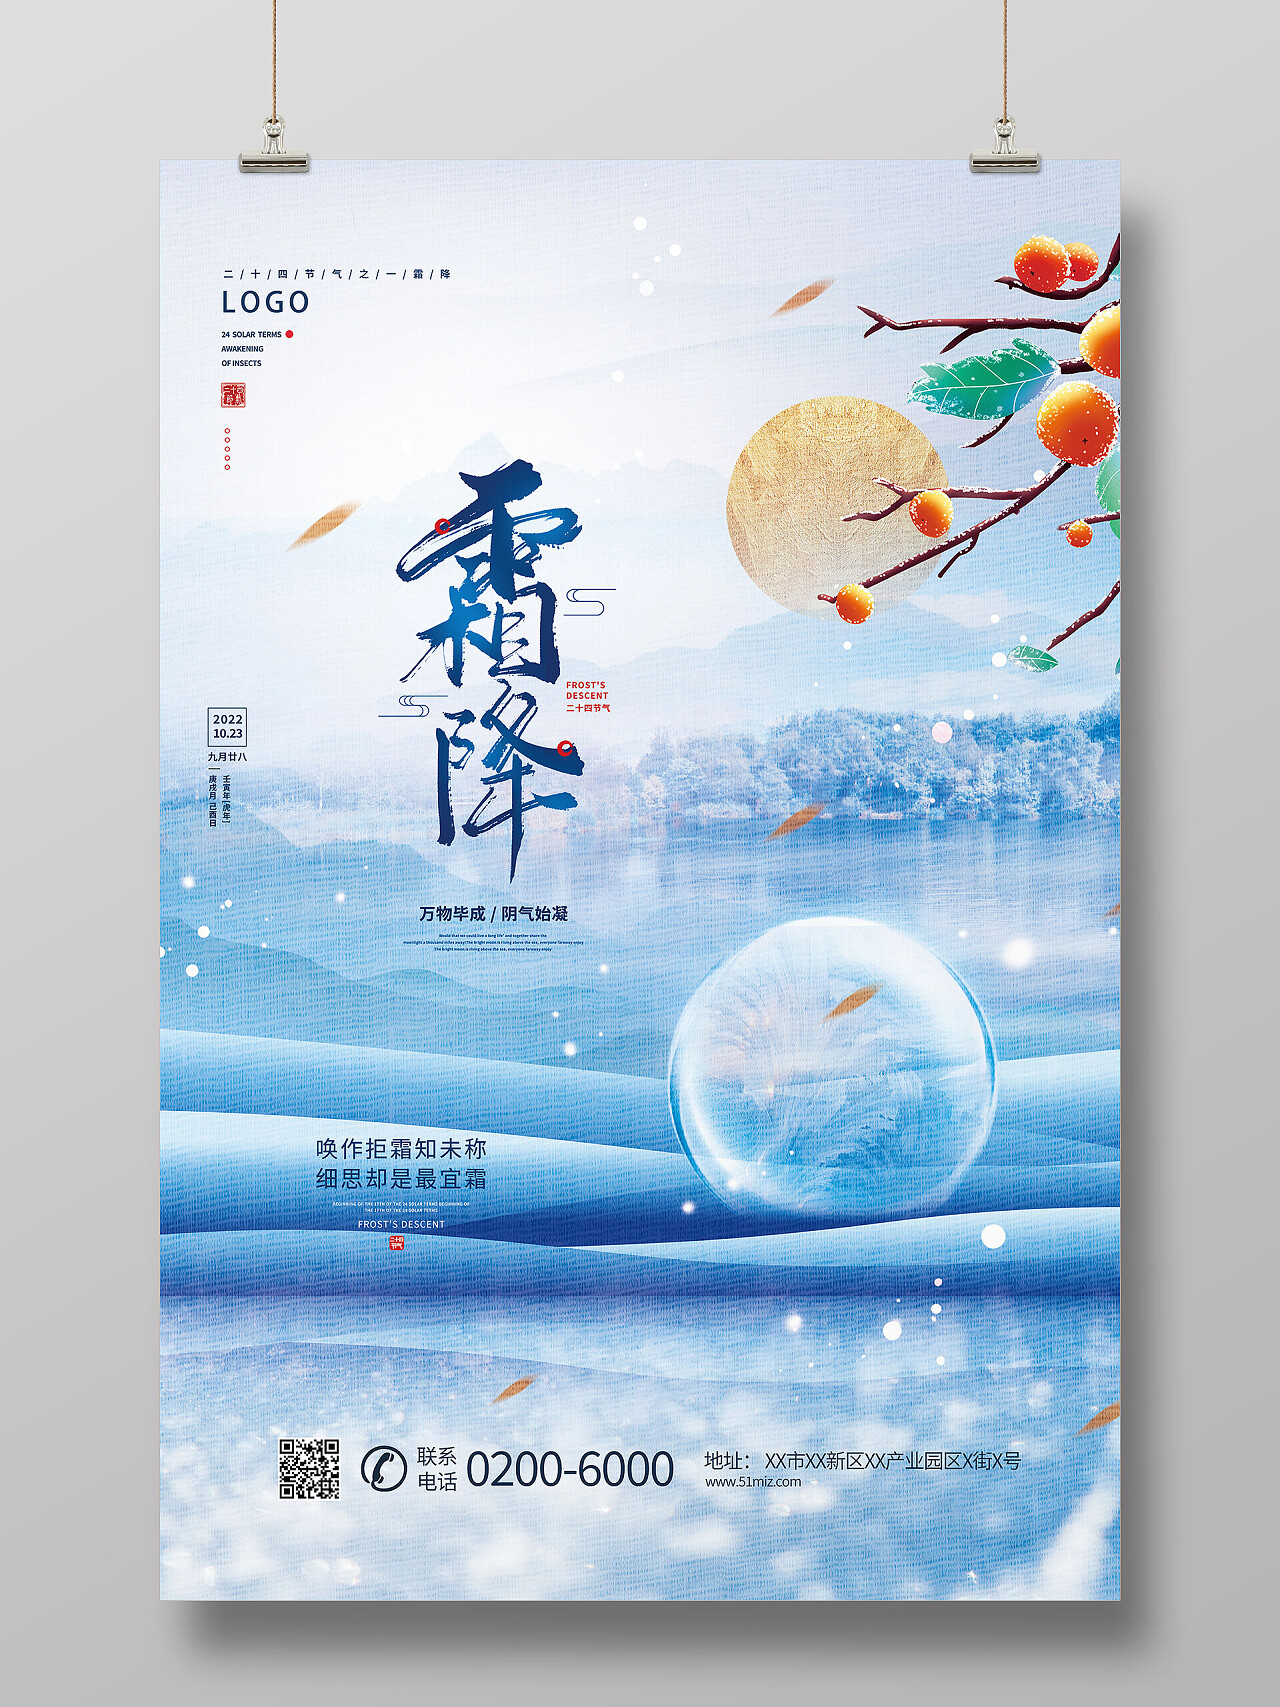 蓝色霜降水墨风中国传统节日24节气二十四节气霜降宣传海报霜降海报节日